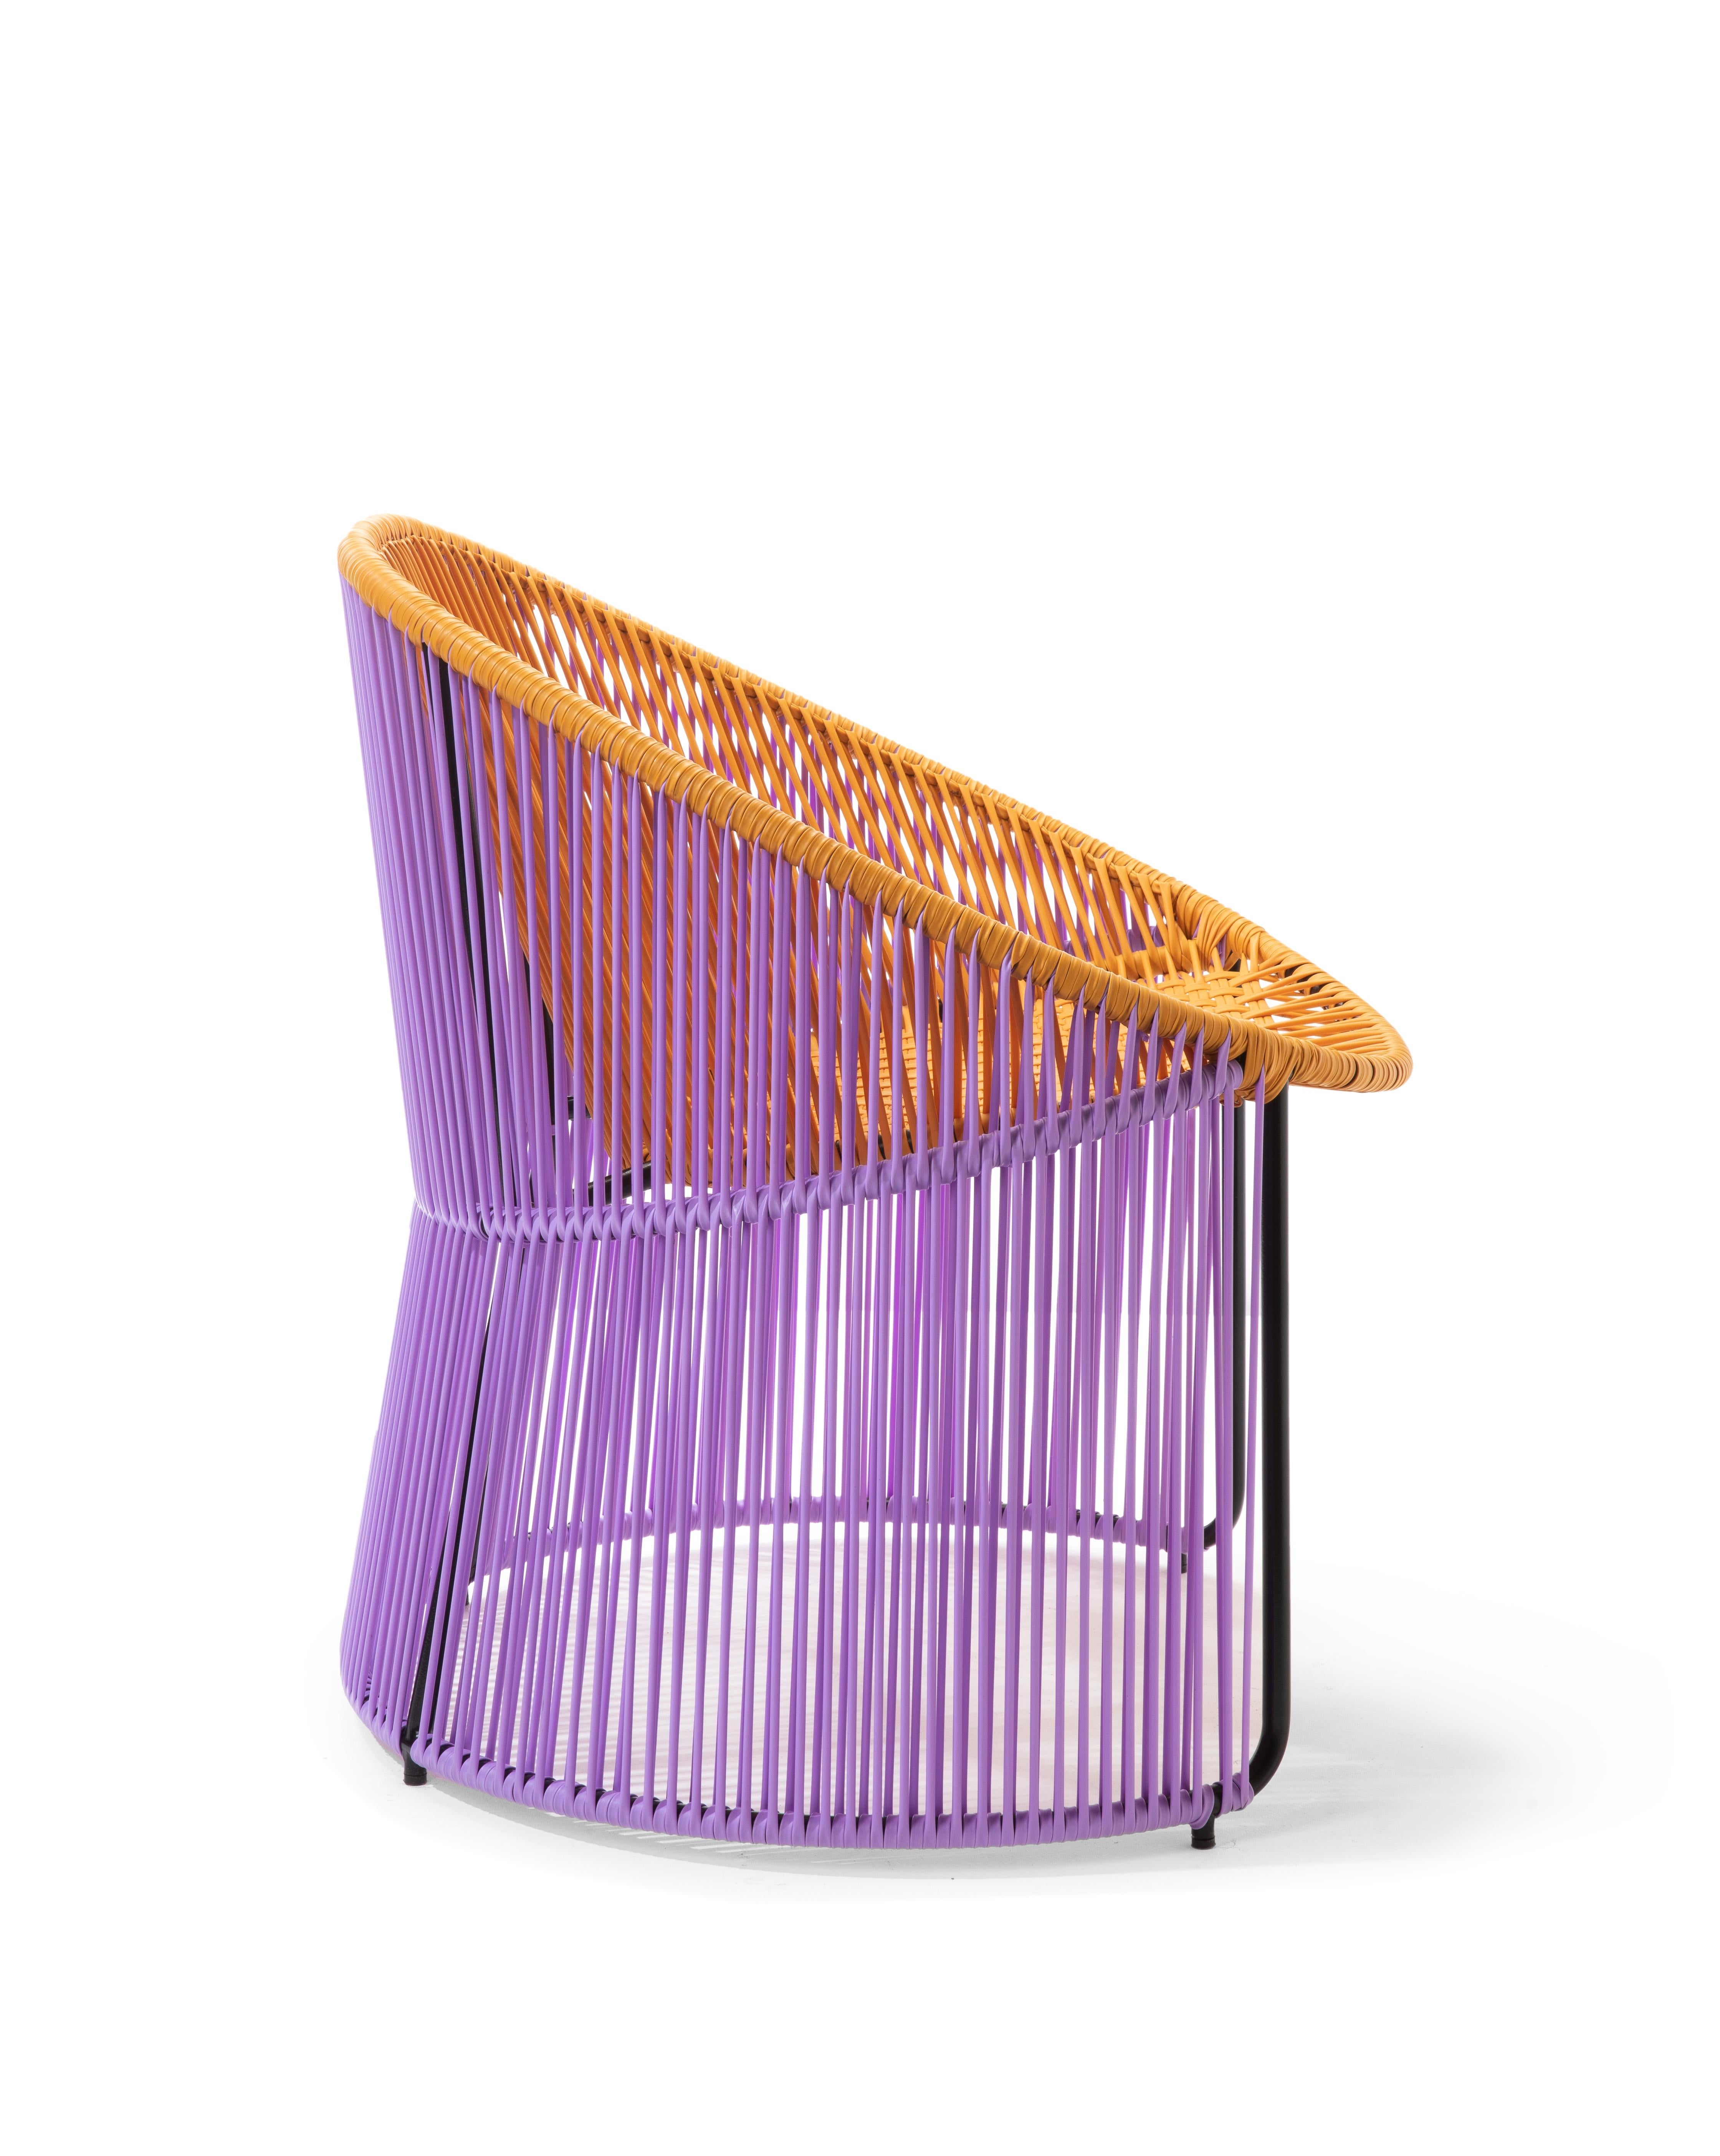 German Set of 4 Honey Cartagenas Lounge Chair by Sebastian Herkner For Sale